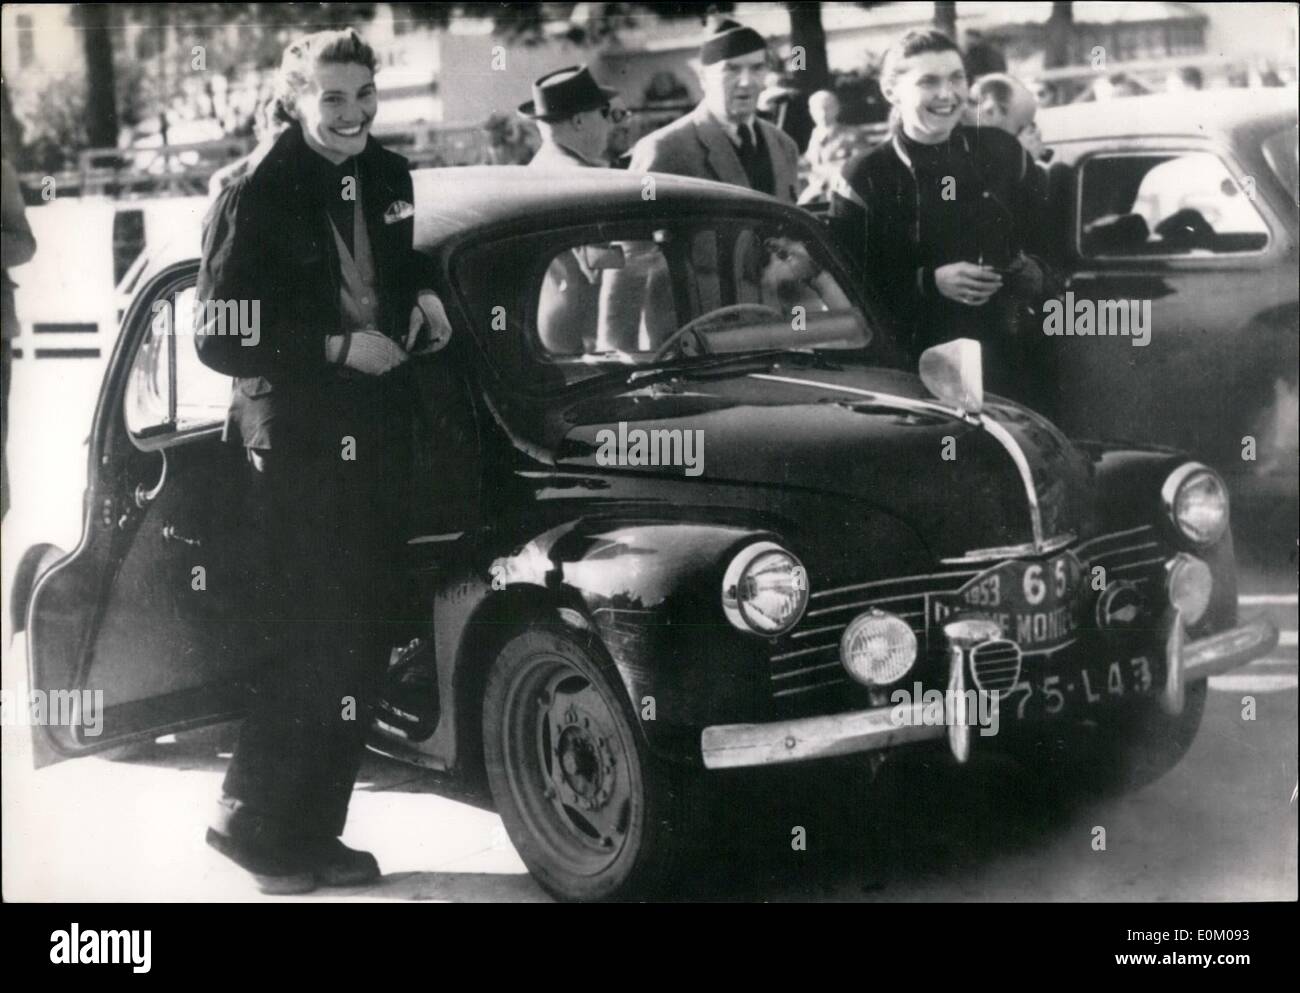 01 janvier 1953 - Rallye de Monte Carlo : Fist arrivées la dame française MMEs équipe Pochon Terray conduisant une voiture Renault photographiés à leur arrivée à Monte Carlo ce matin. Banque D'Images